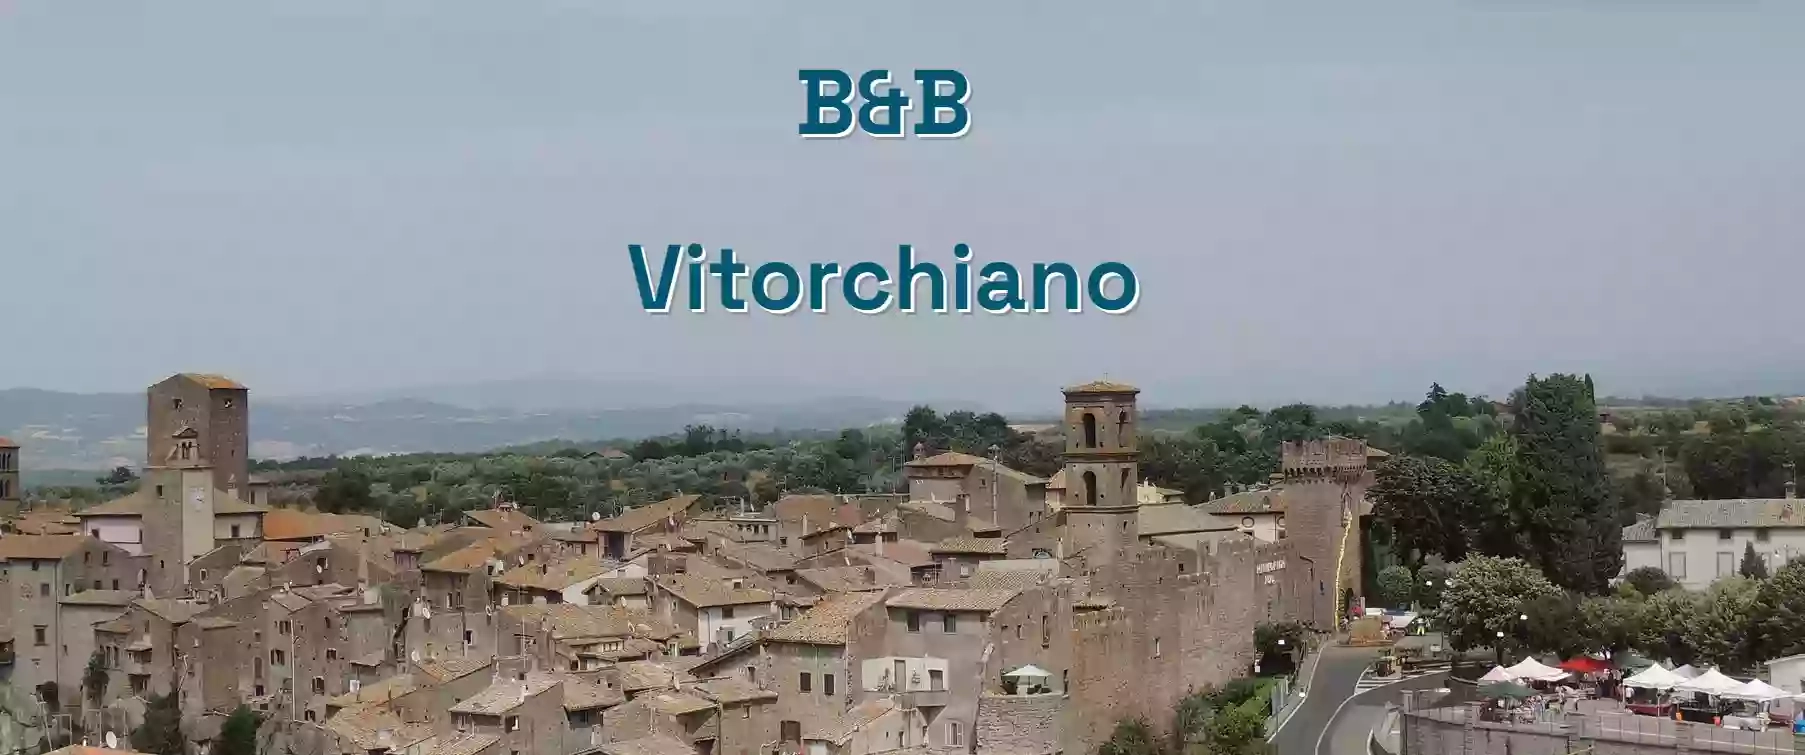 B&B Vitorchiano